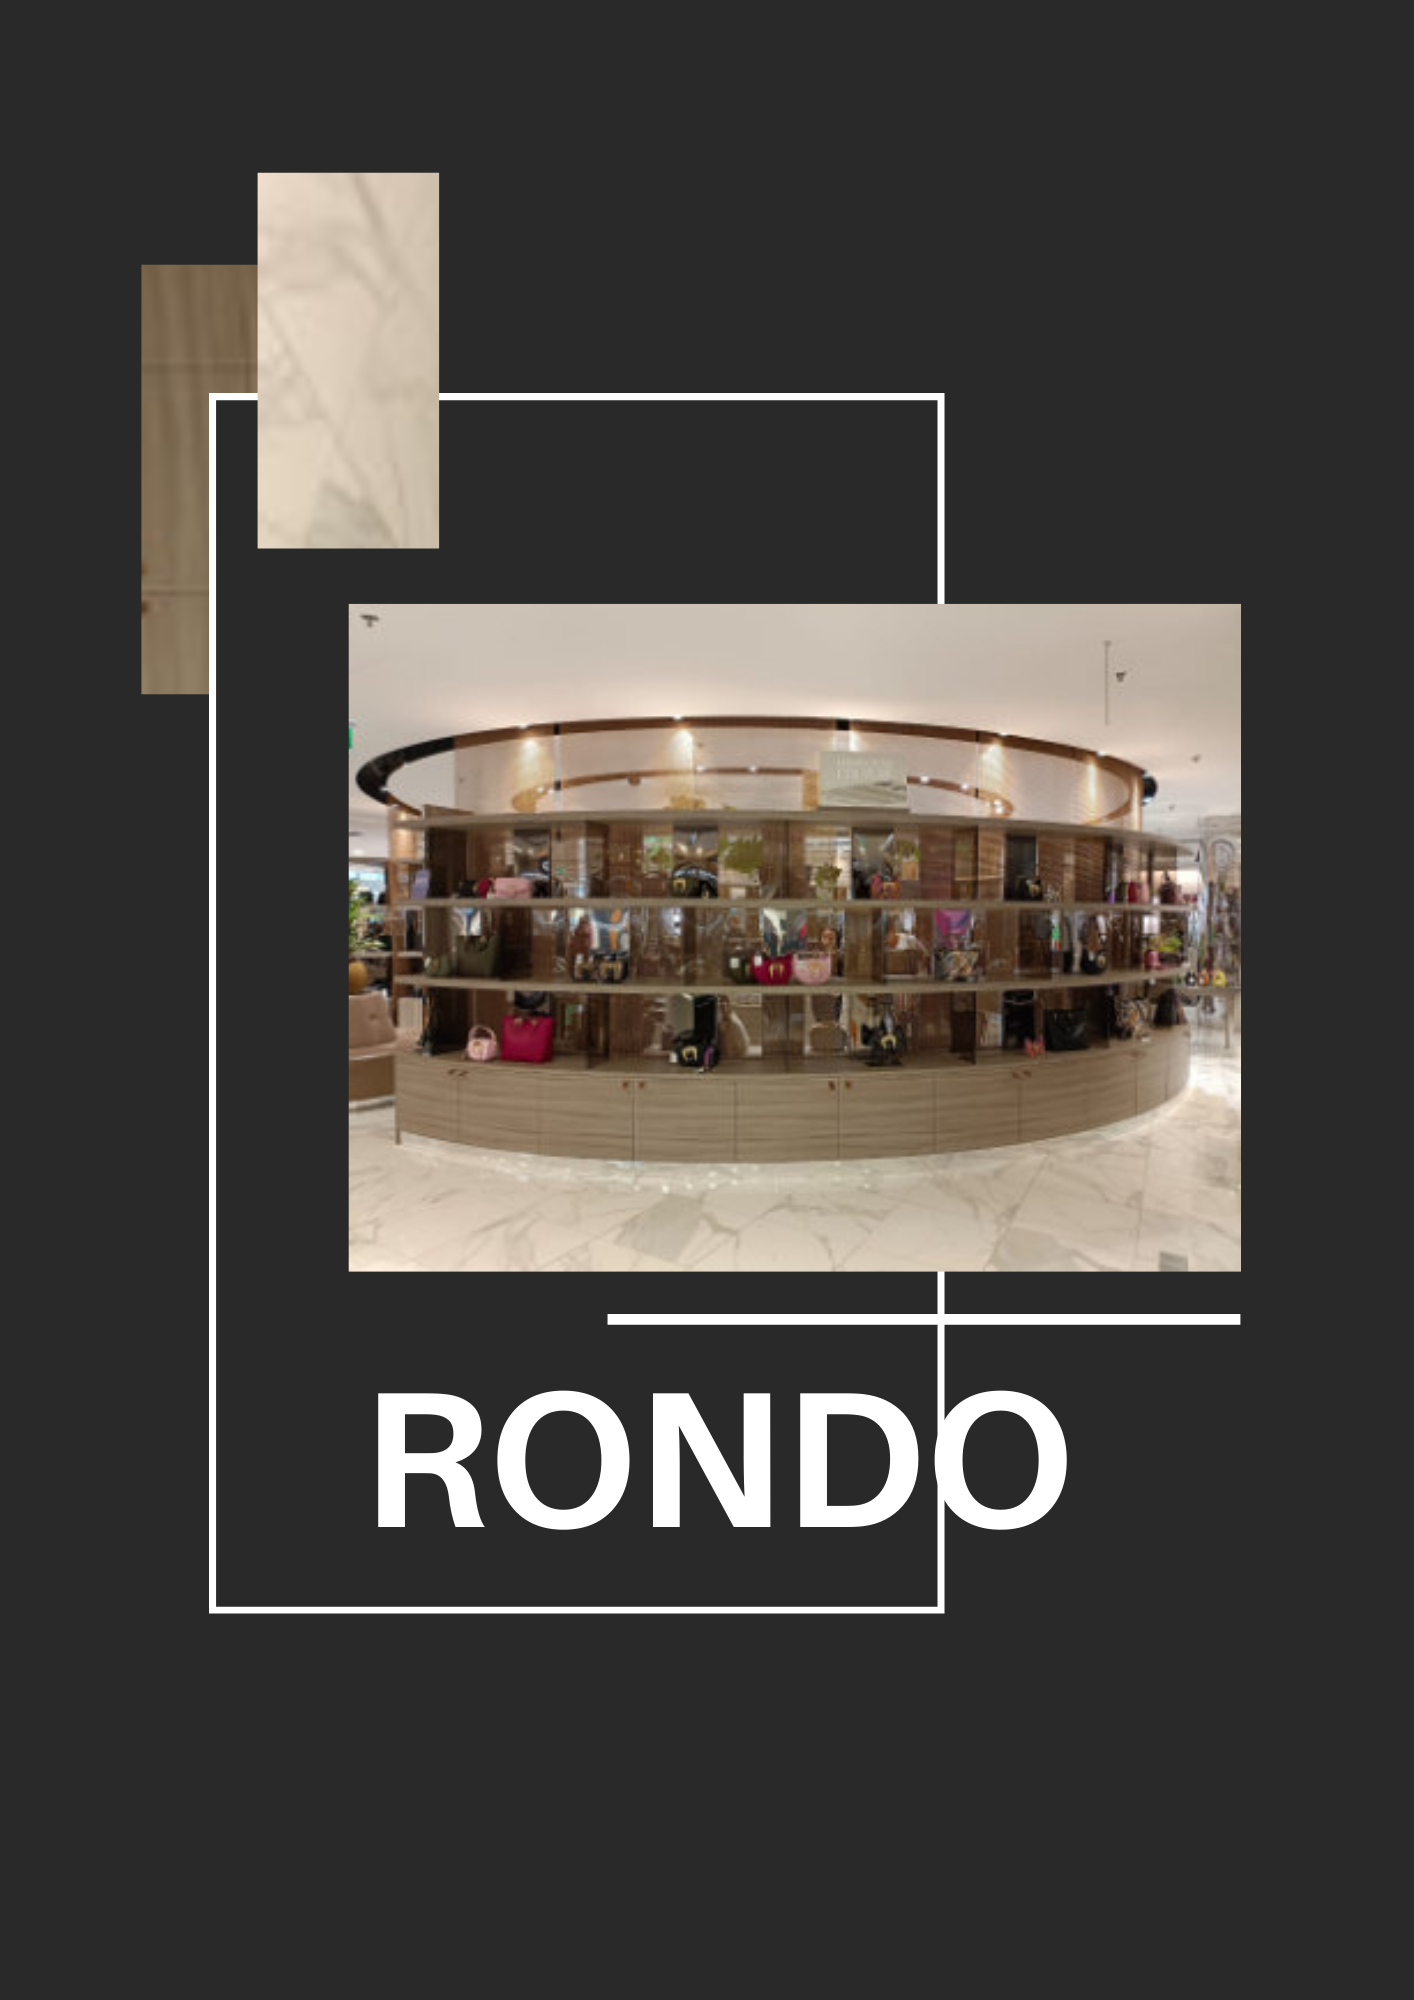 Der RONDO Designer-Showroom im Einkaufszentrum präsentiert eine exquisite Auswahl an Accessoires und Taschen, umgeben von einer eleganten, kreisförmigen form, die den Blick auf das stilvolle Interieur freigibt.